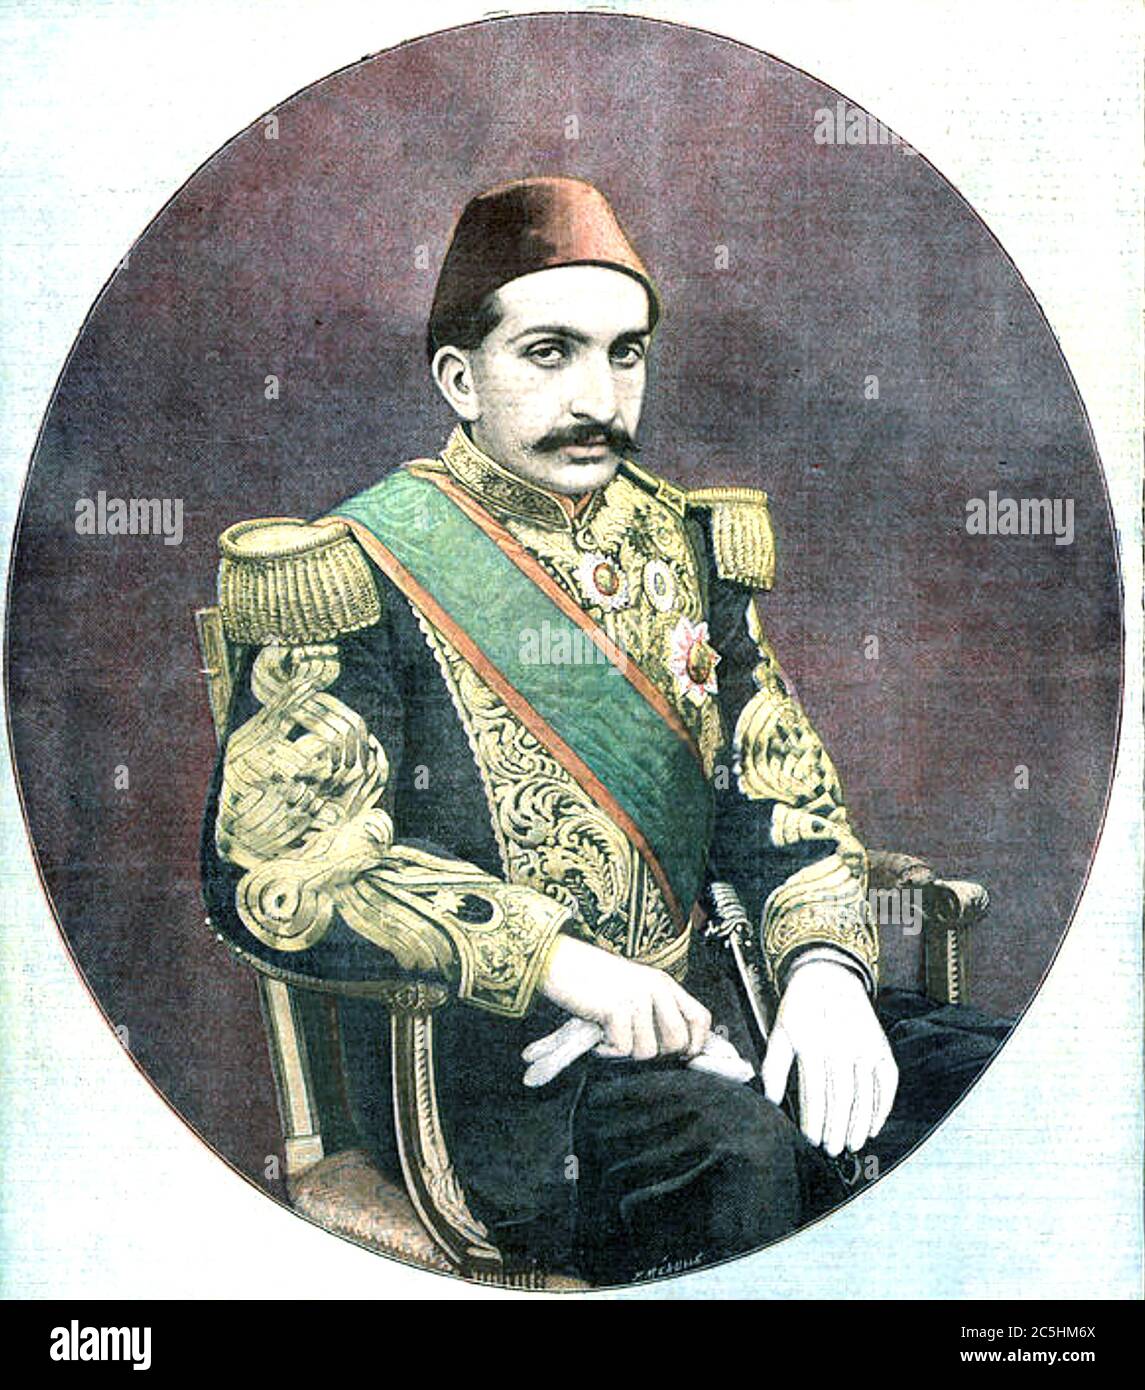 ABDUL HAMID II (1842-1918) 34th Sultan of the Ottoman Empire Stock Photo